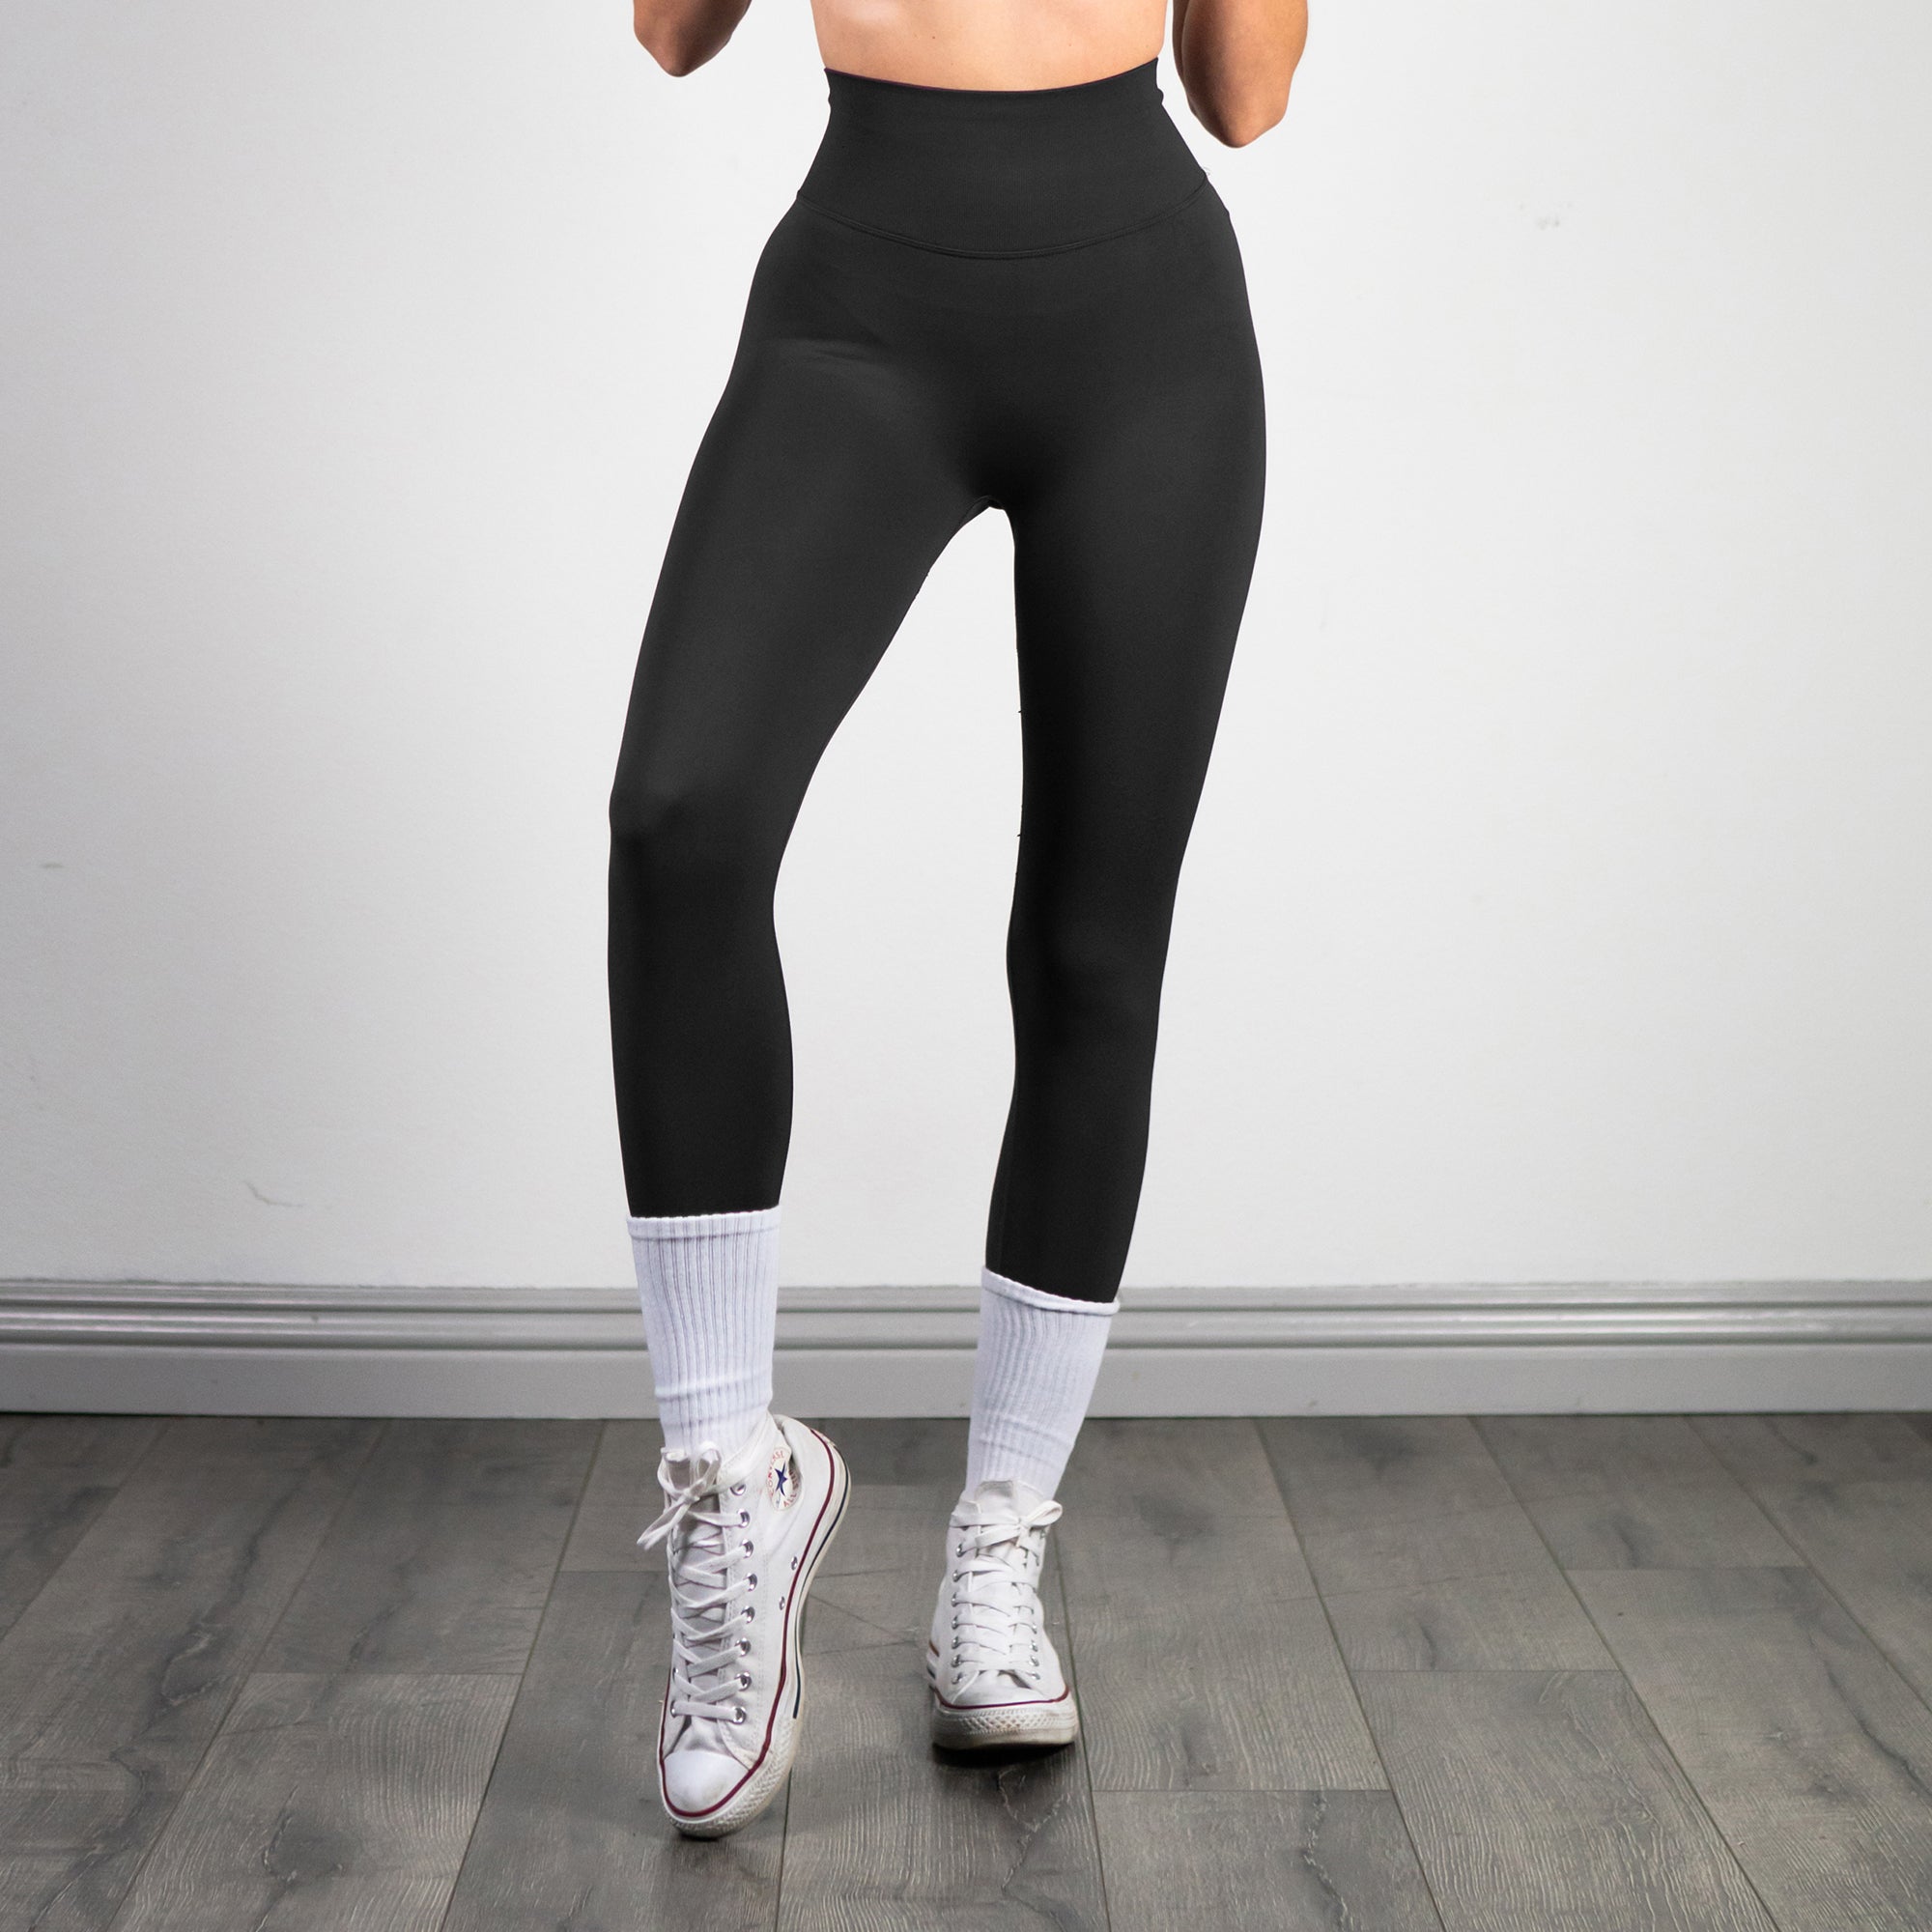 The Malibu scrunch leggings 😍 #leggings #gym #fit #apparel #aquari